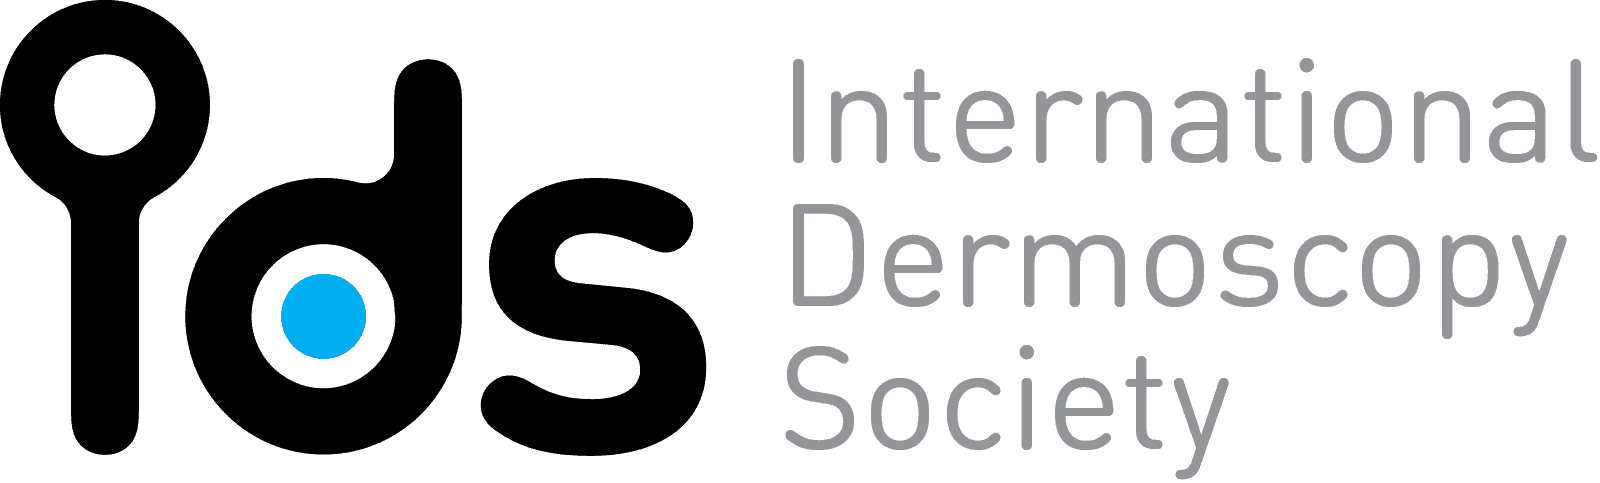 Internal Dermoscopy Society